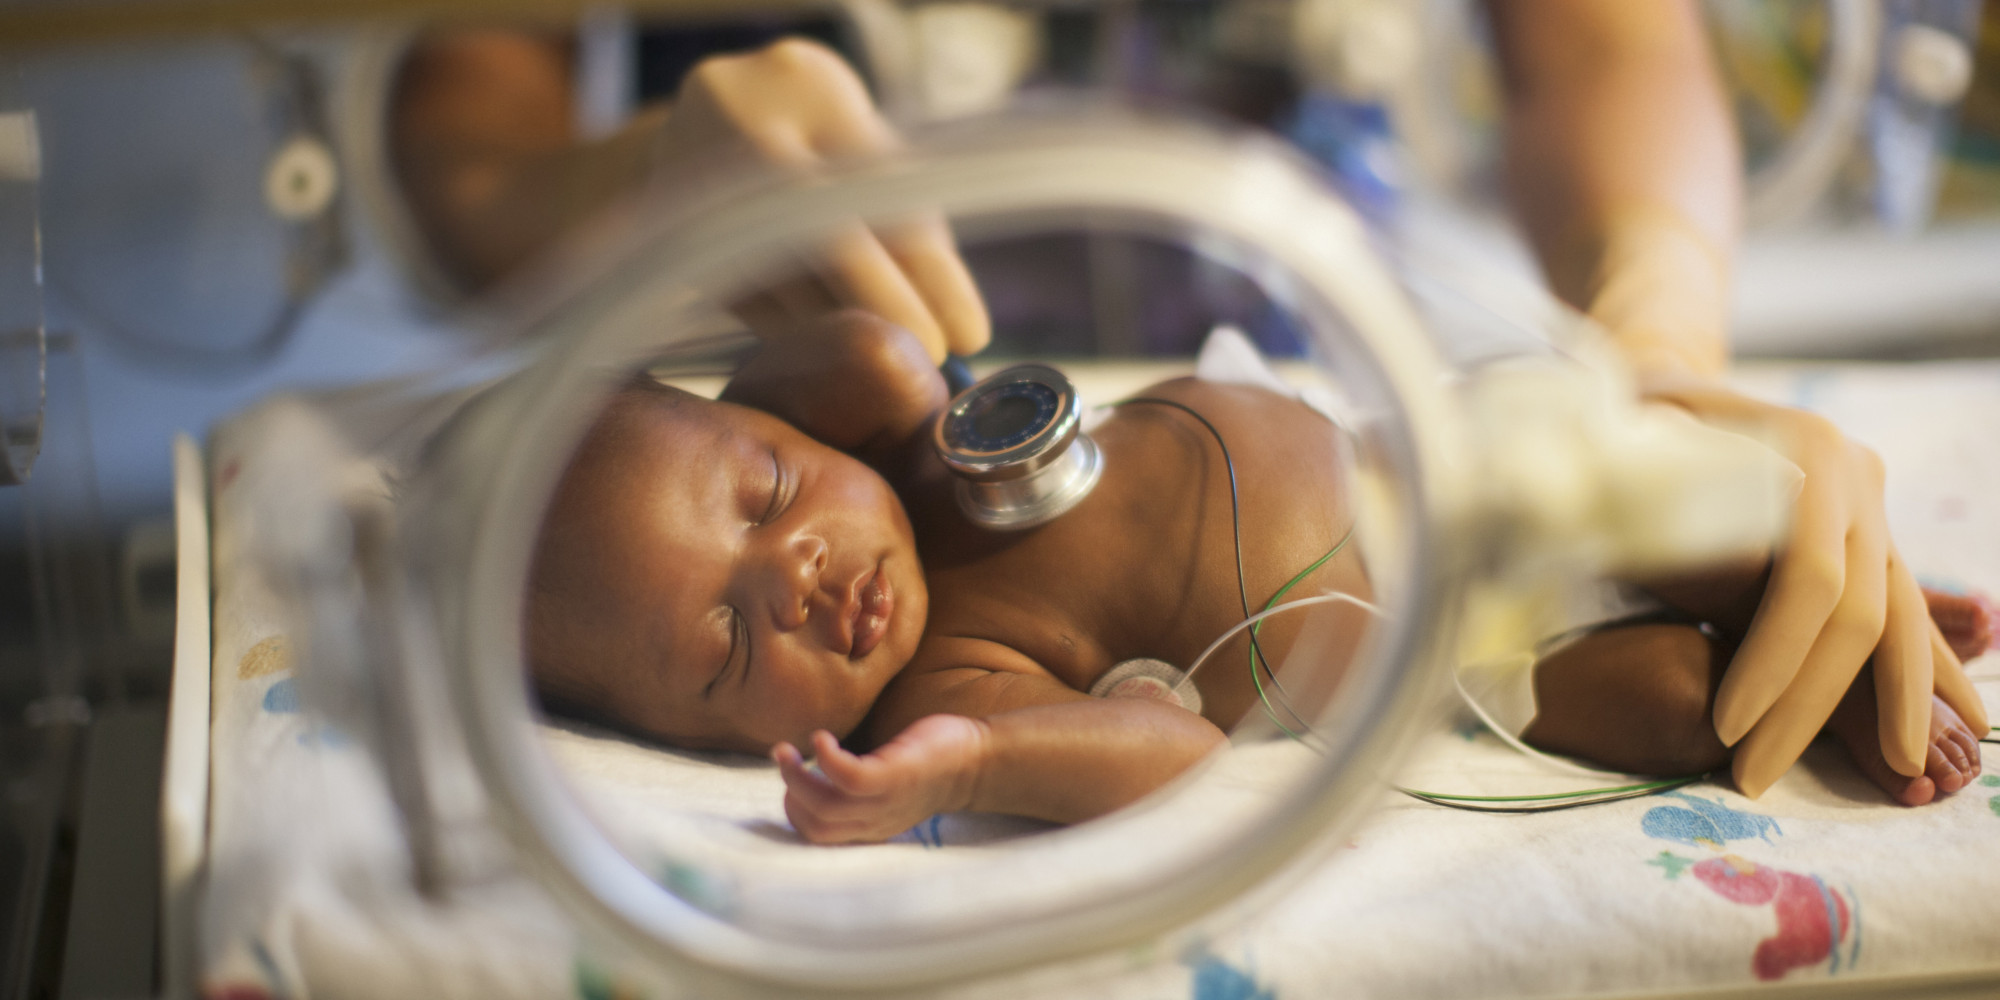   سؤال طبى وإجابته: هل هناك تلازم بين الولادة القيصرية وإصابة الطفل المولود بهذه الطريقة بحساسية الصدر؟!